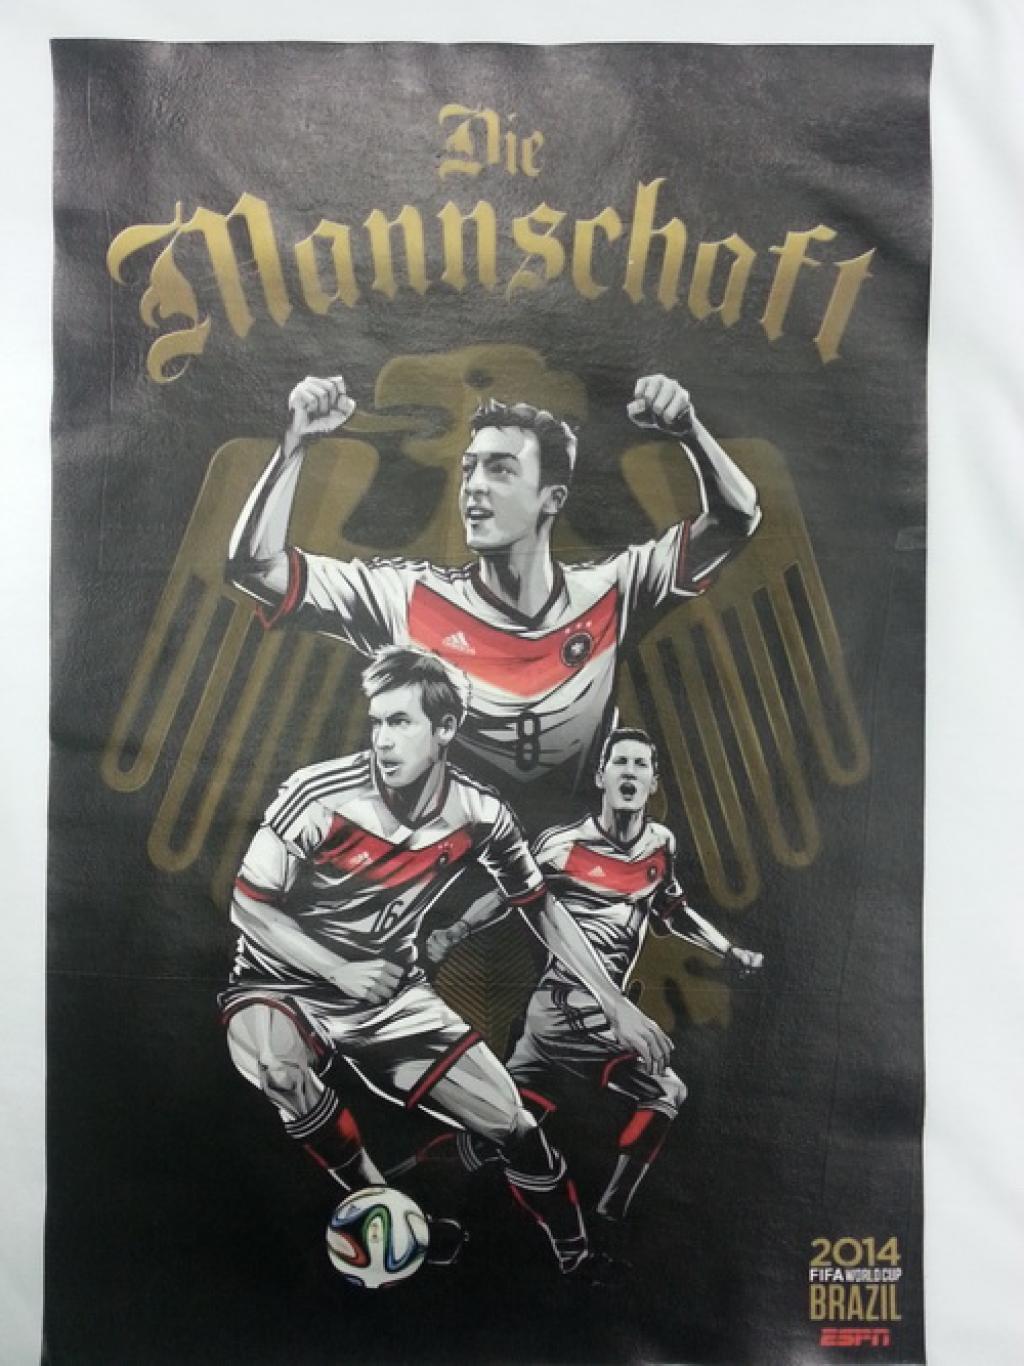 Фан-майка с официальным постером команды Германии